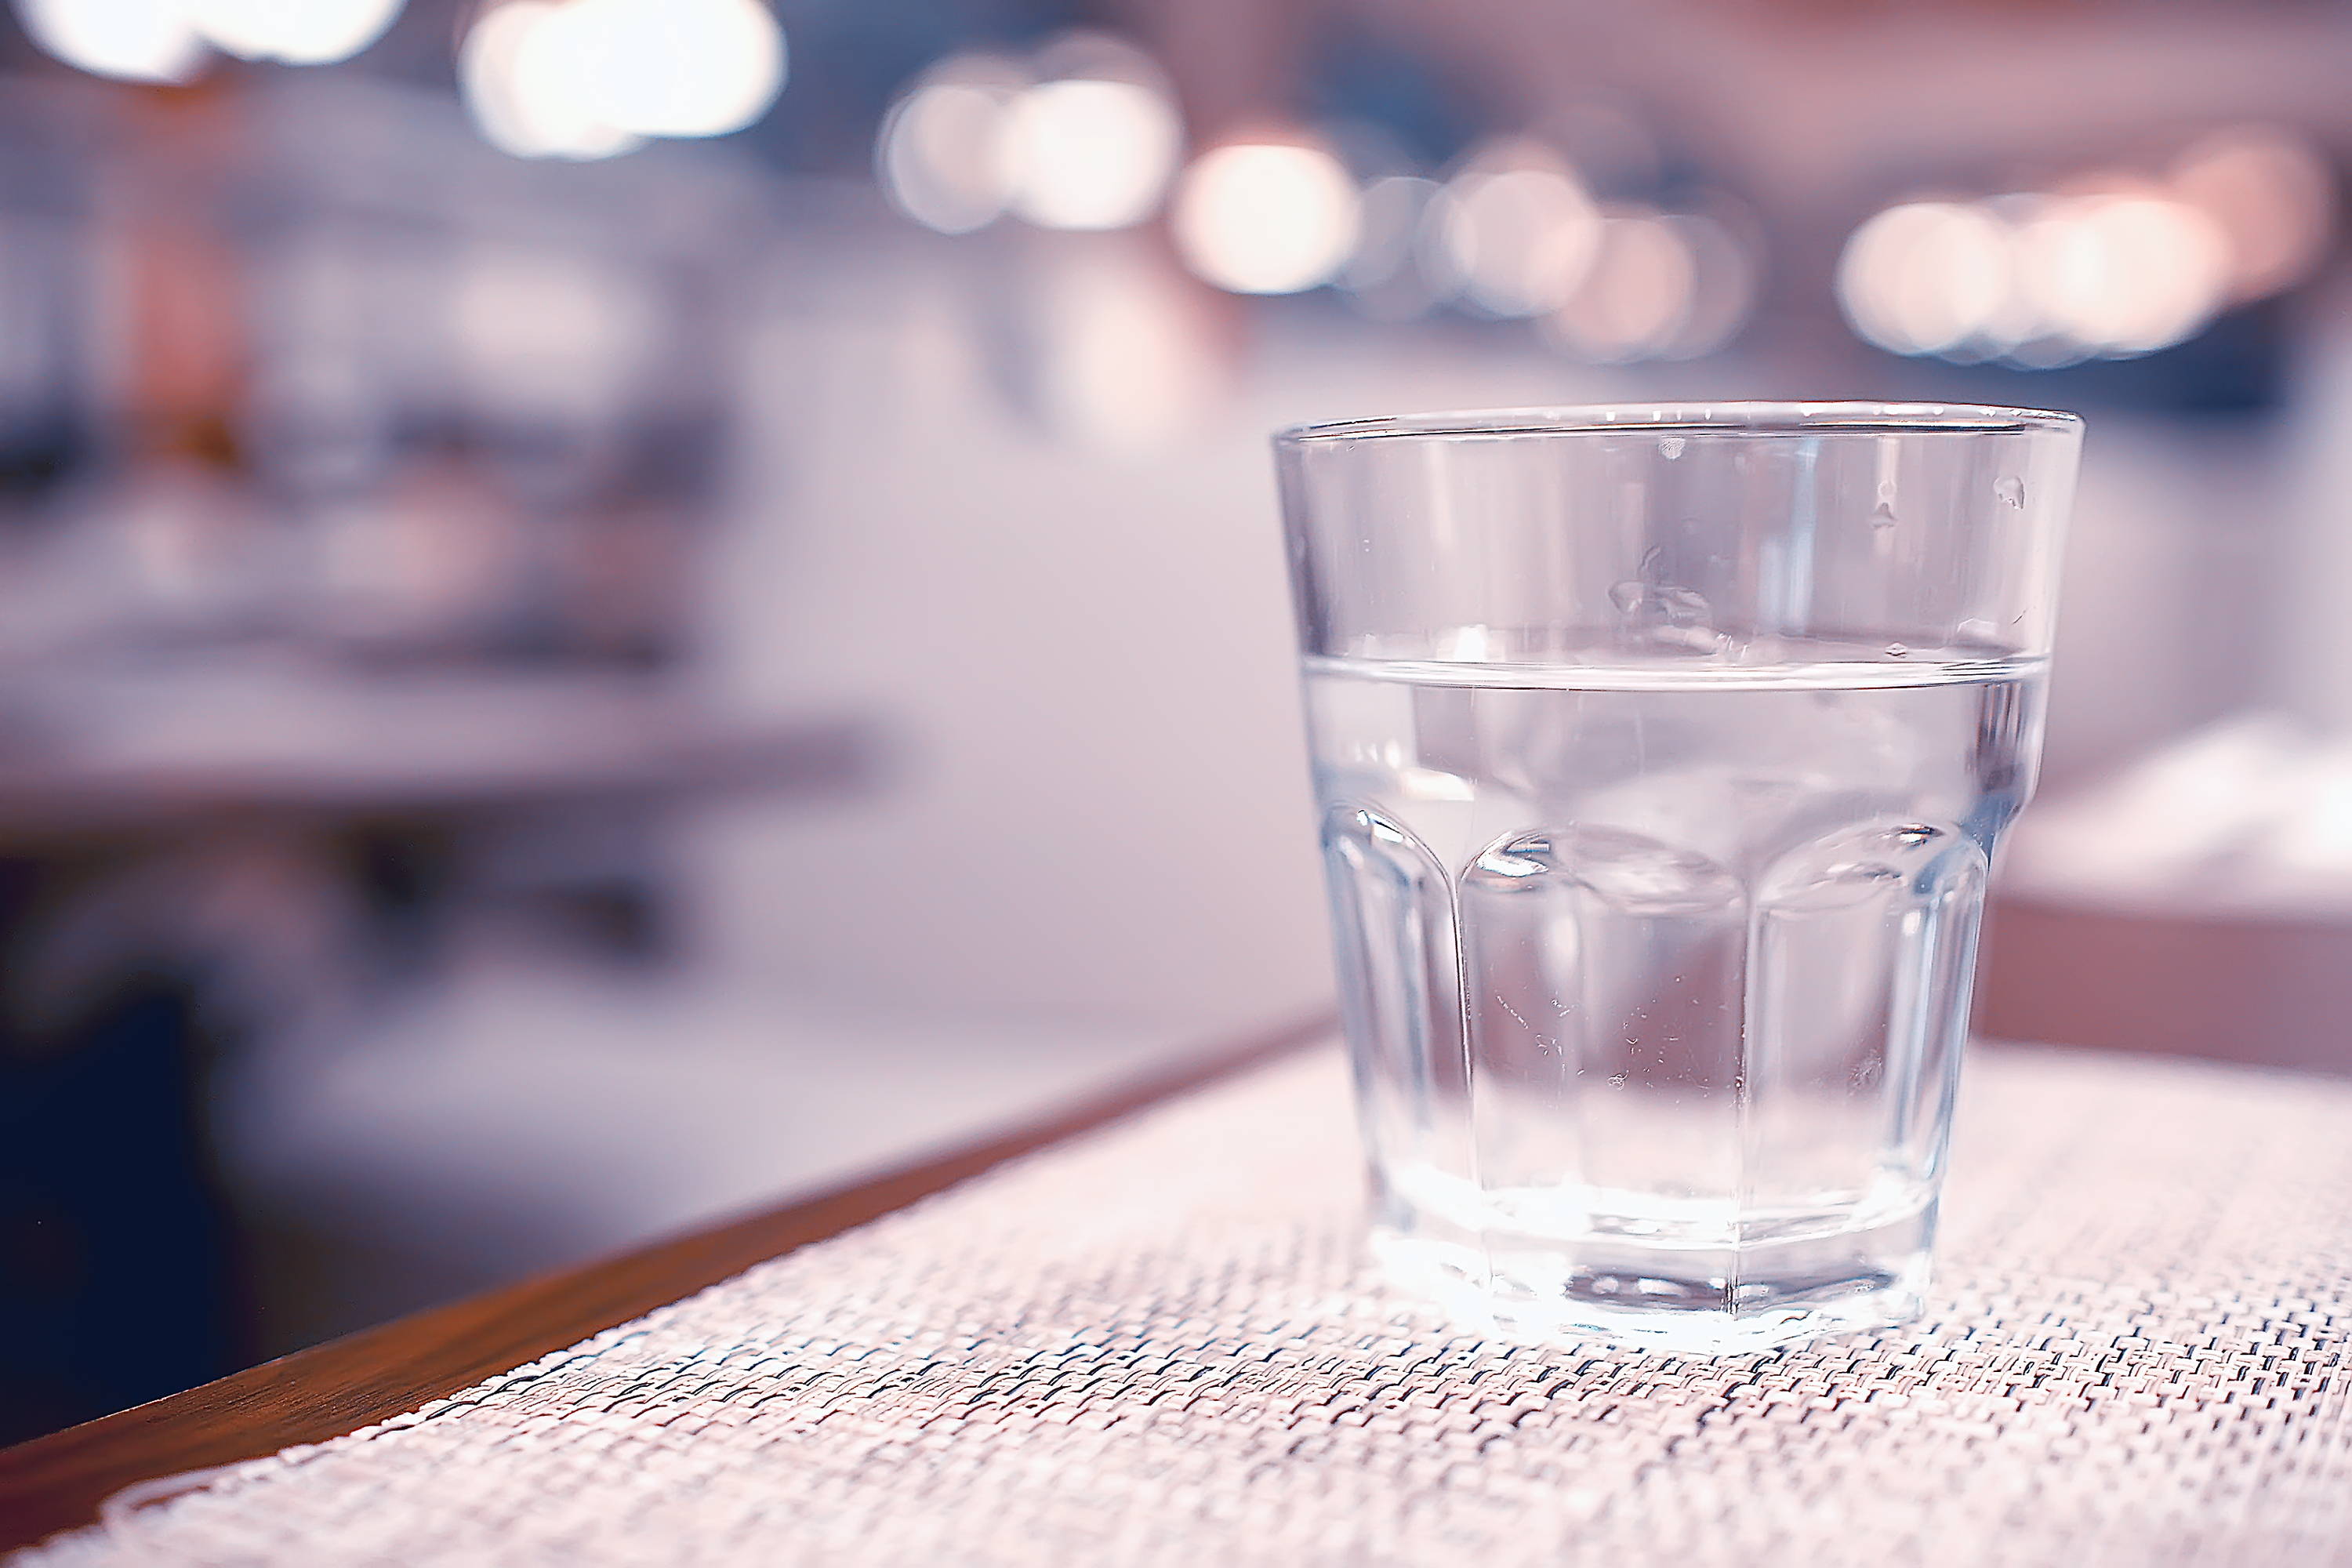 UV-käsittely auttaa ravintoloita tarjoamaan turvallista vettä